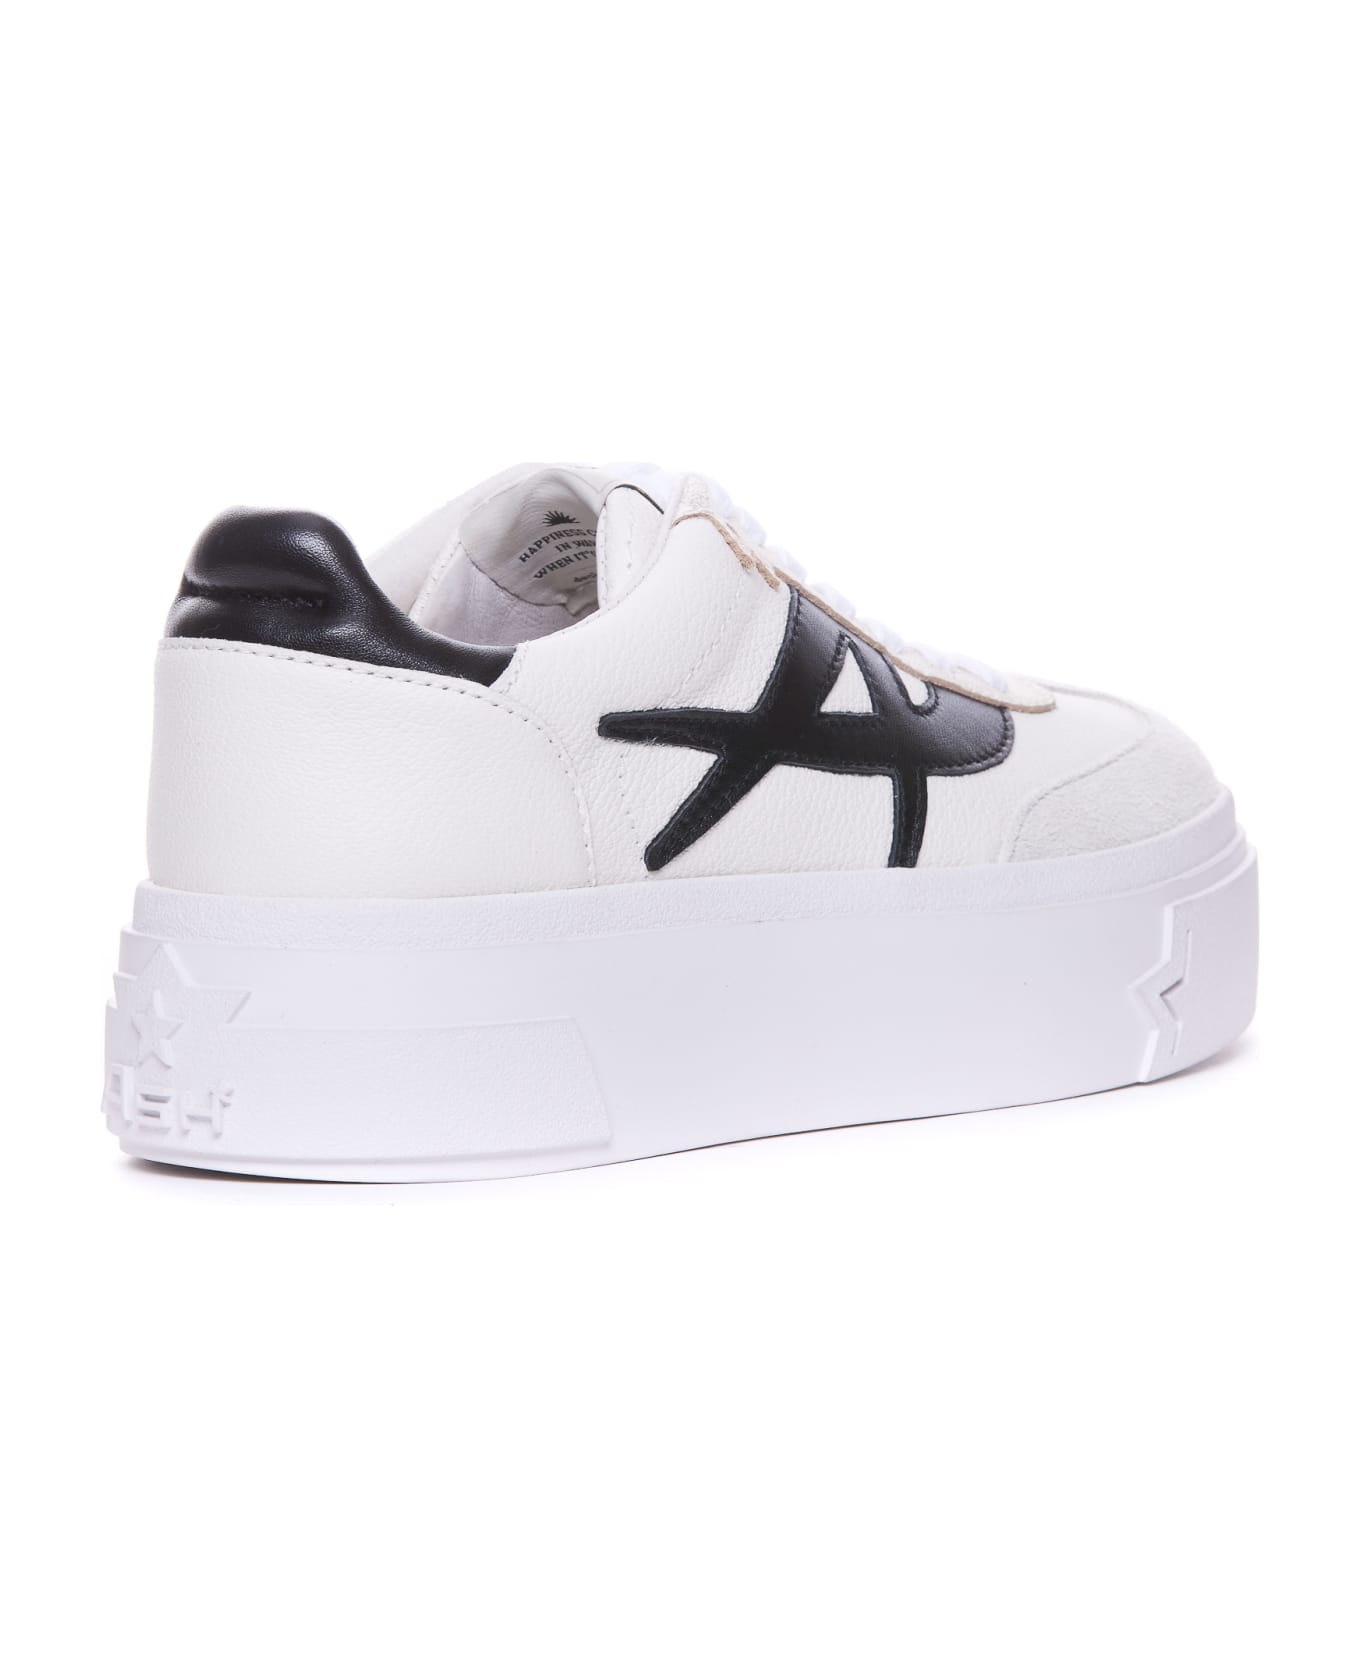 Ash Starmoon Sneakers - White